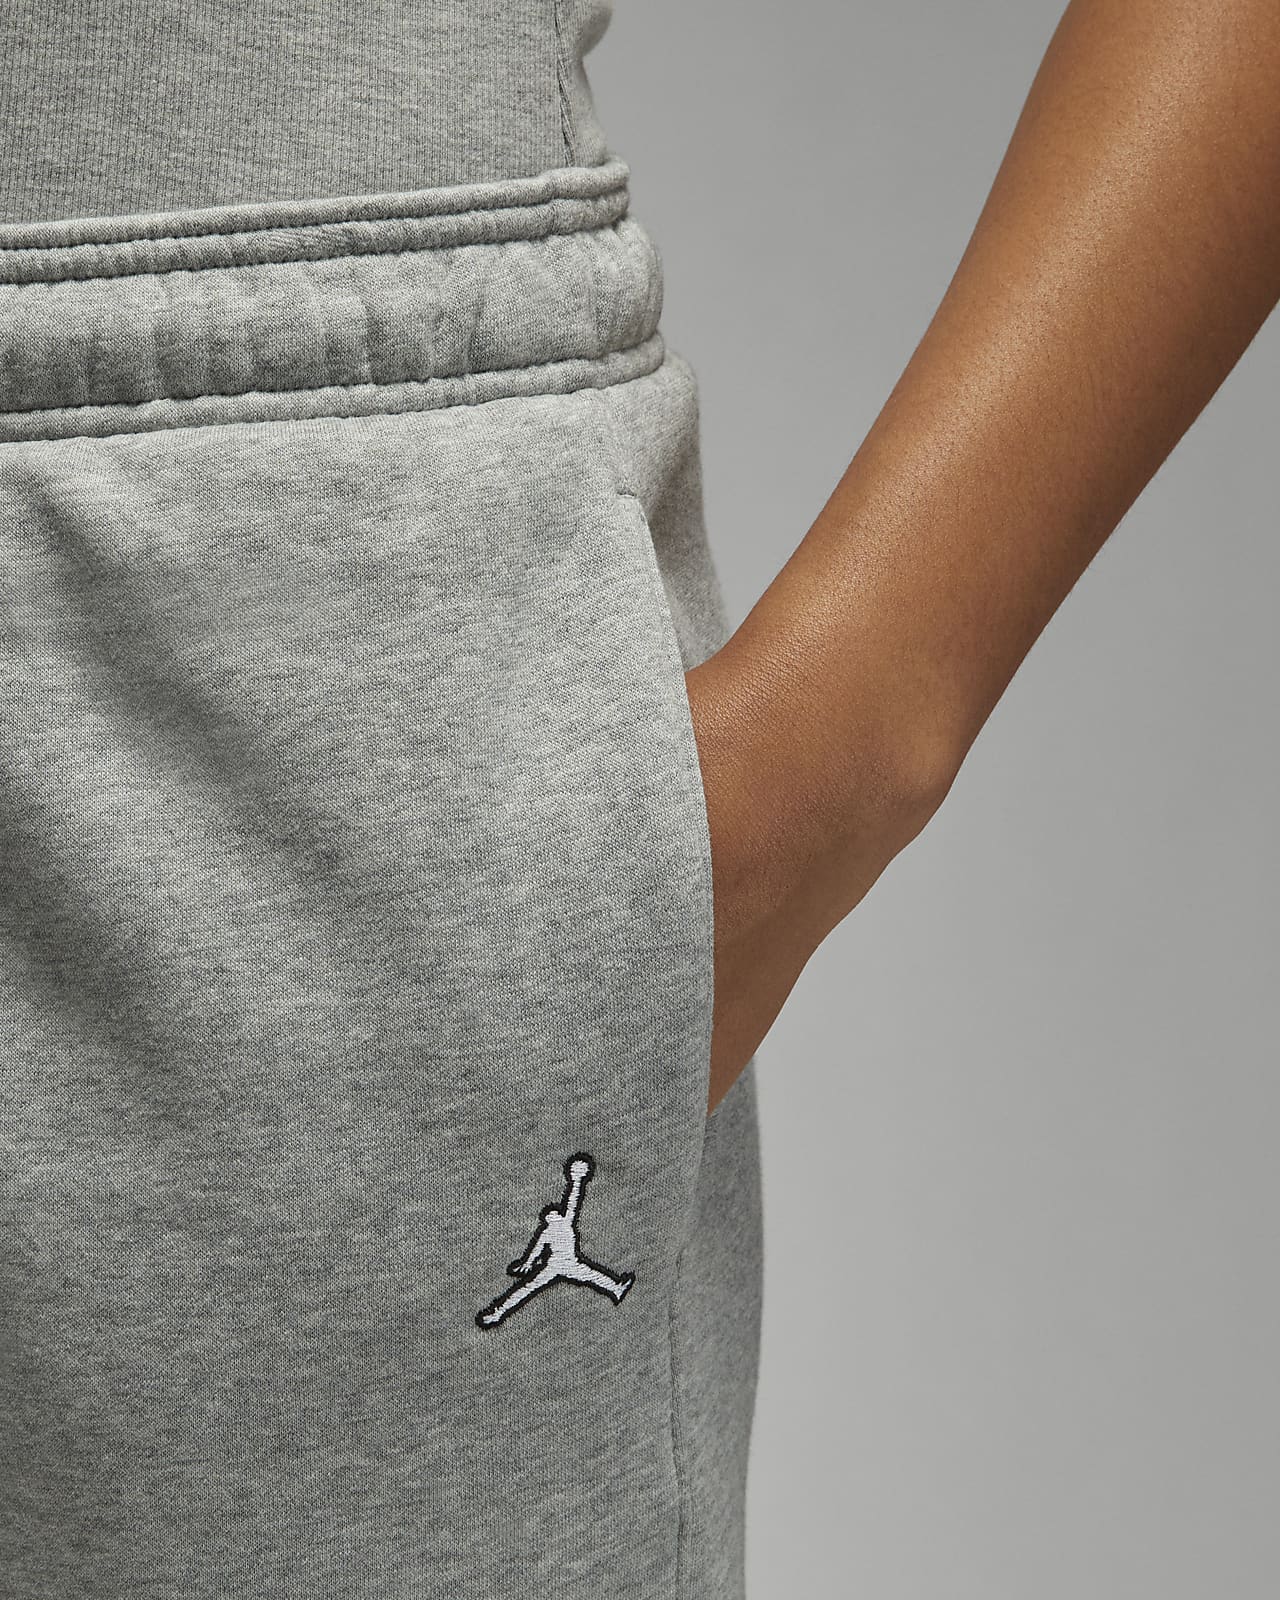 Jordan Brooklyn Fleece Men's Trousers. Nike UK